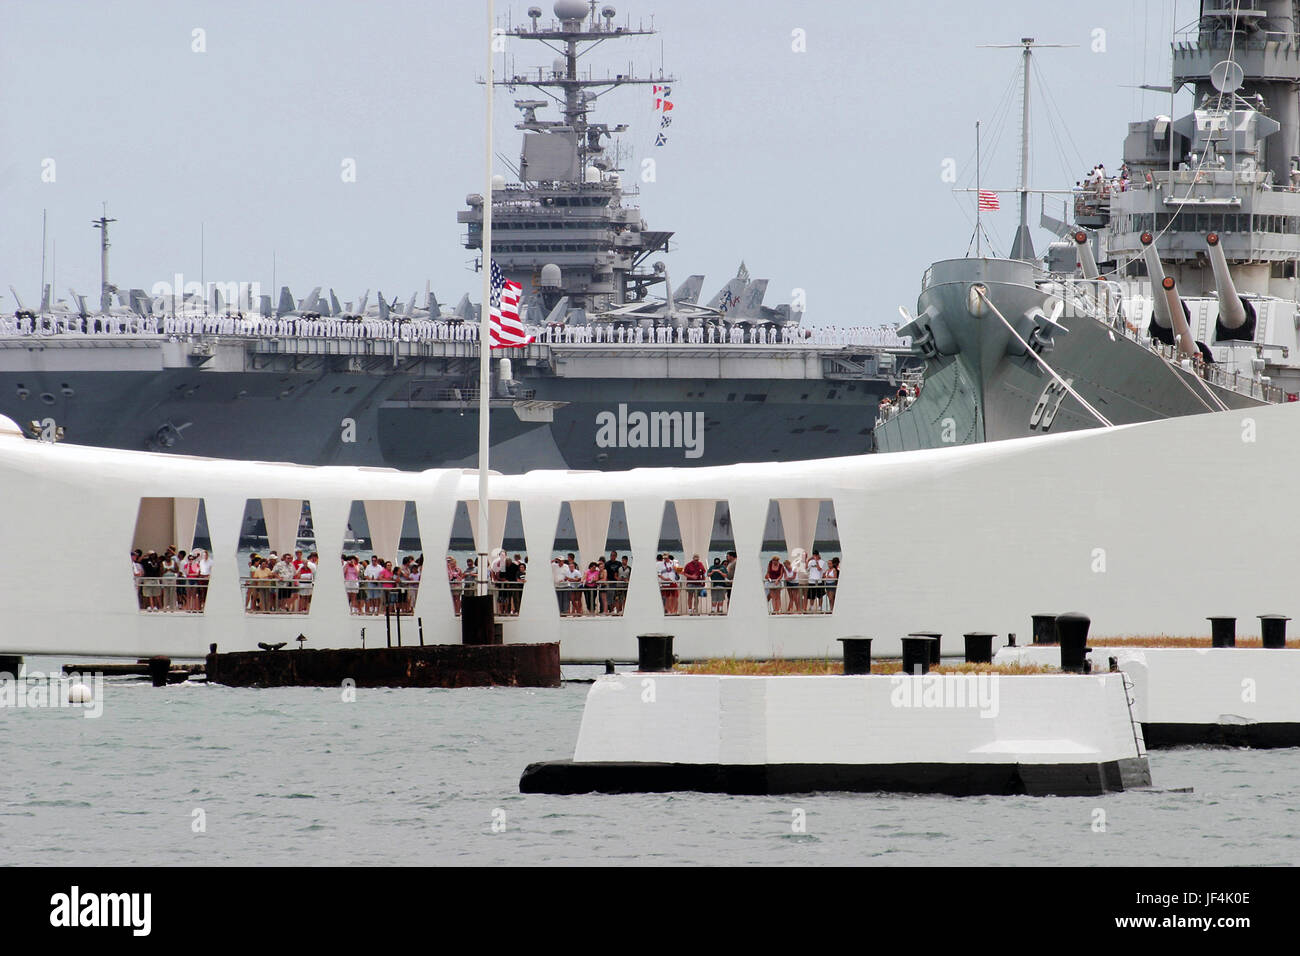 Matrosen an Bord der Flugzeugträger der Nimitz-Klasse USS John C. Stennis (CVN-74) Rendern Ehren, wie sie die USS Arizona Memorial in Pearl Harbor, Hawaii passieren. Foto: U.S. Navy des Fotografen Mate 1. Klasse William R. Goodwin Stockfoto